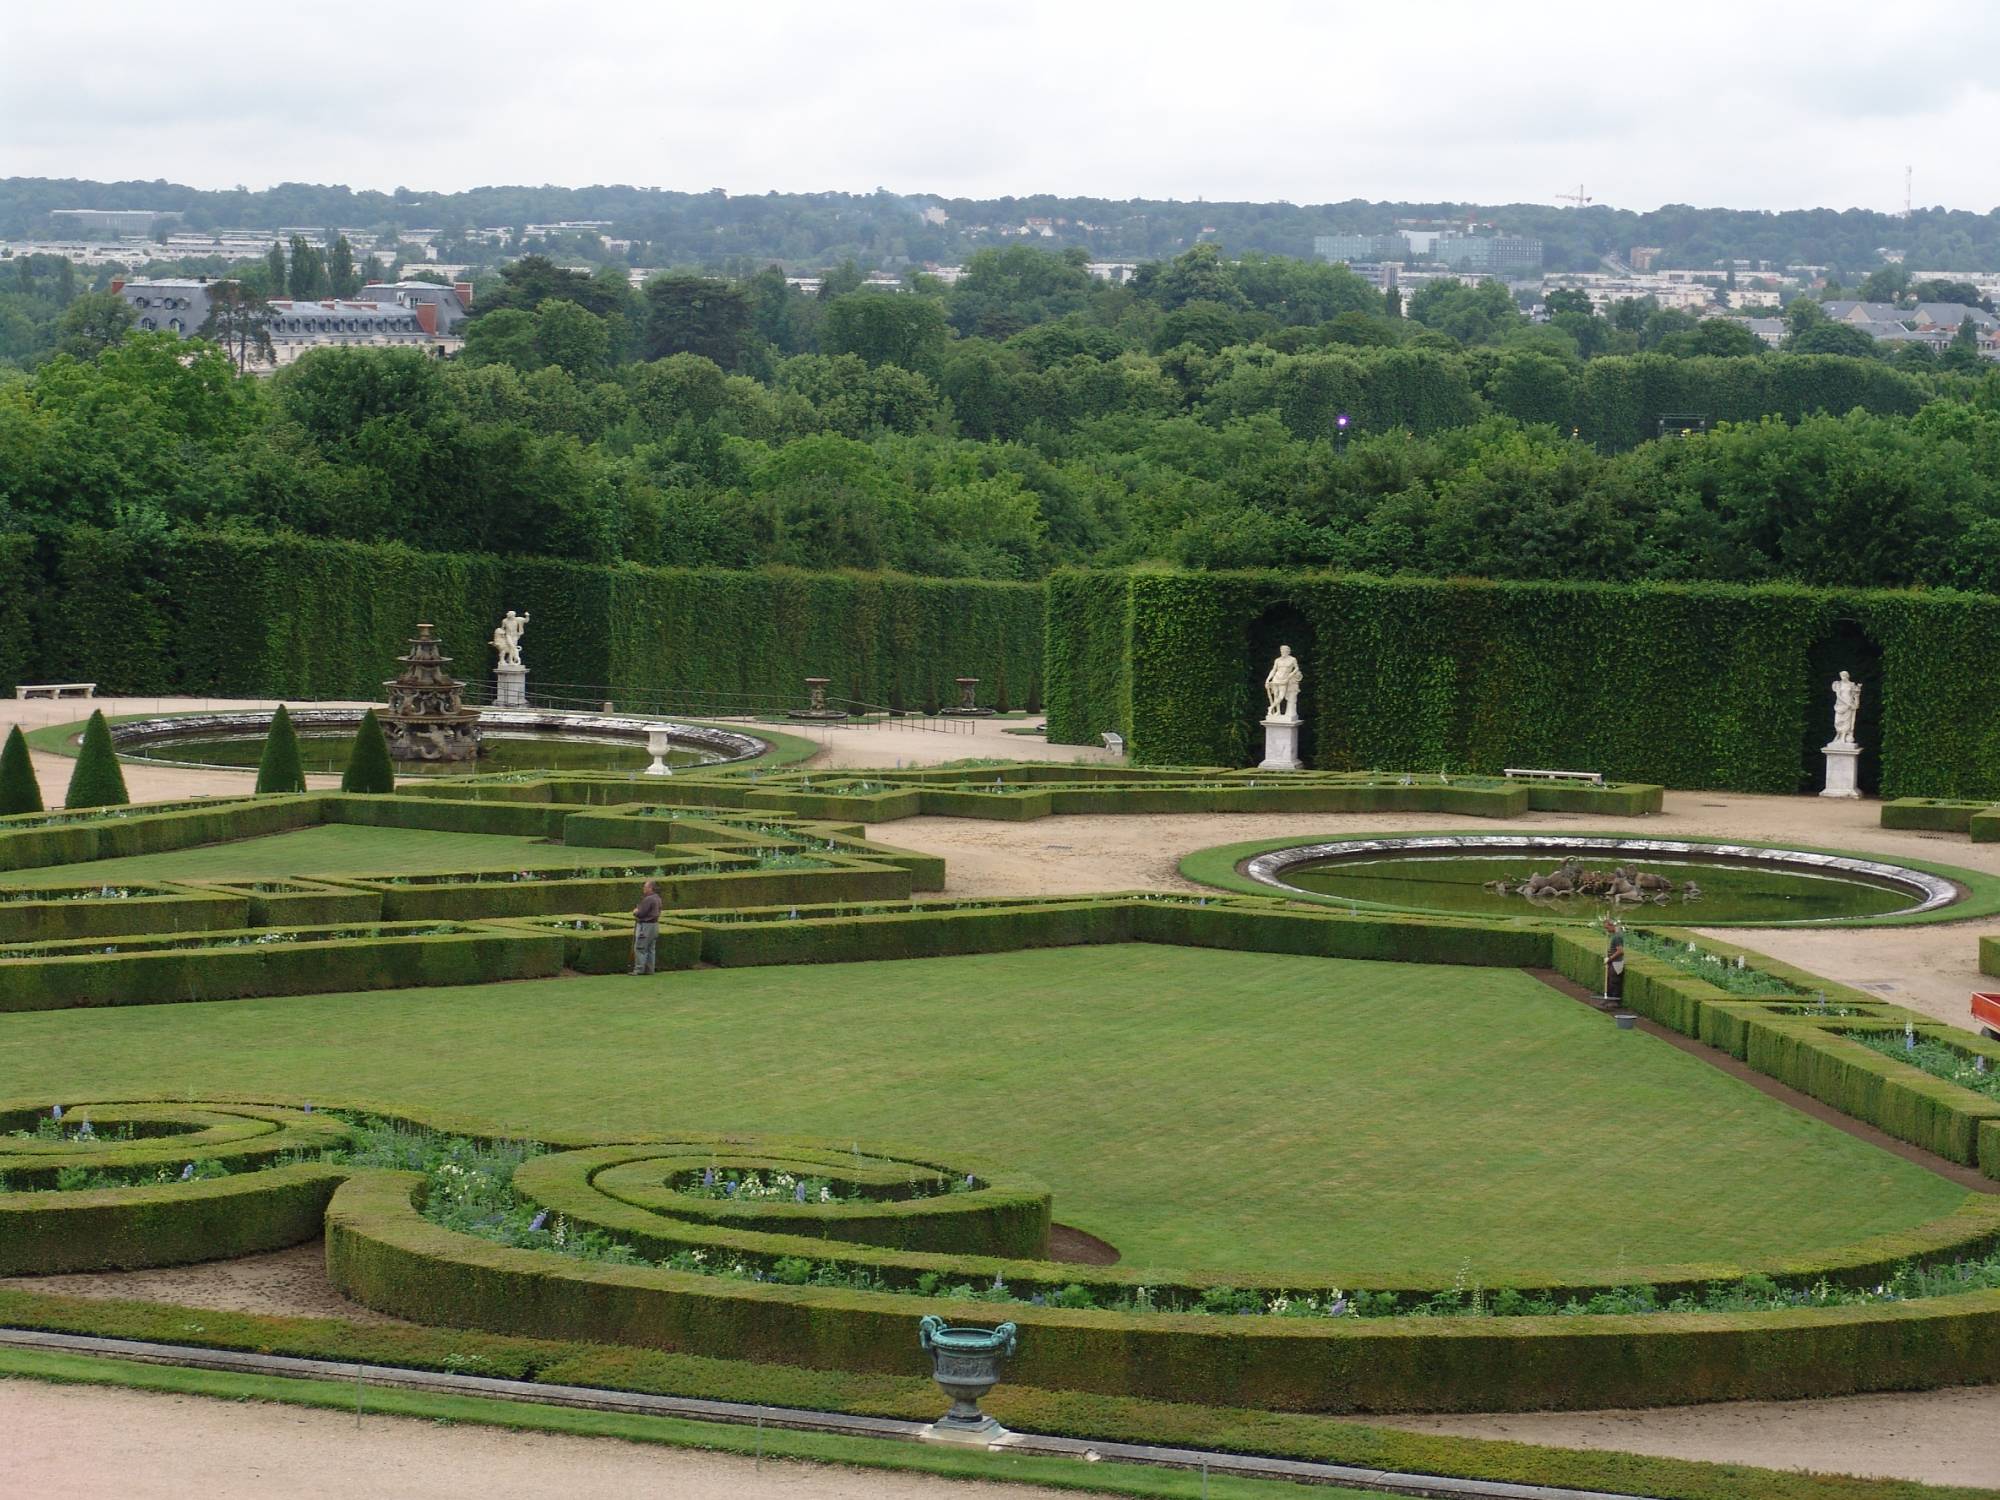 Explore the gardens of Versailles | PassPorter.com